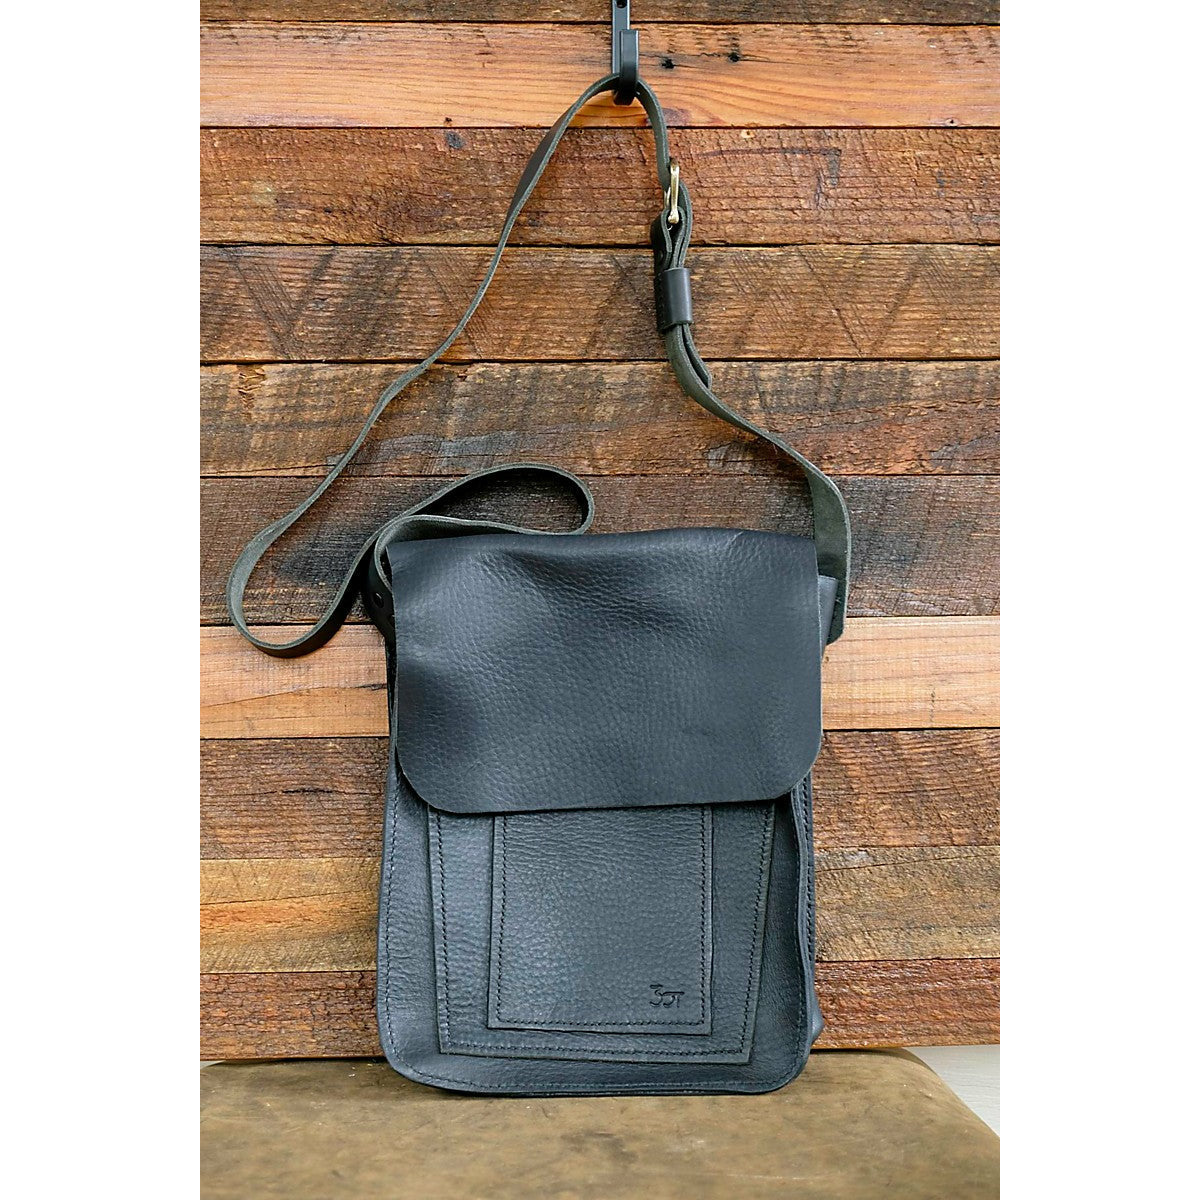 saddle bag, leather saddle bag, messanger bag, leather messanger bag